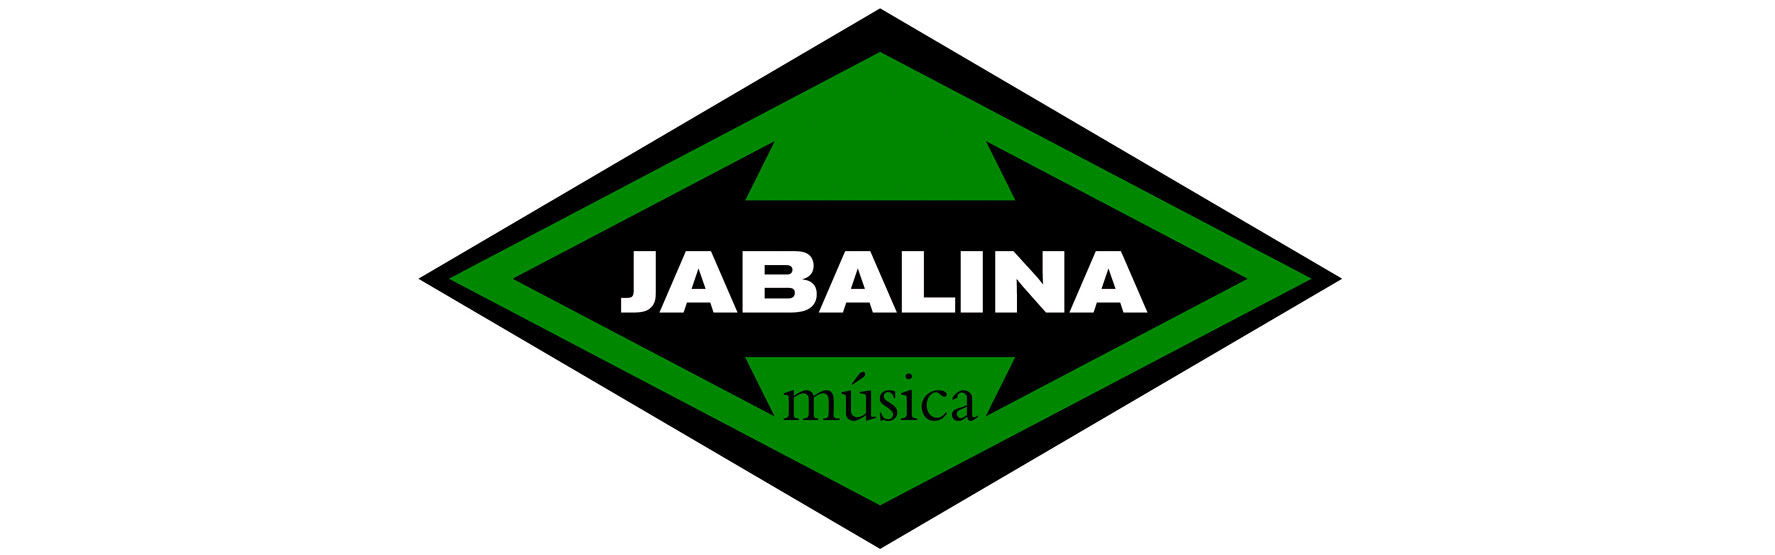 JABALINA(logo)_web